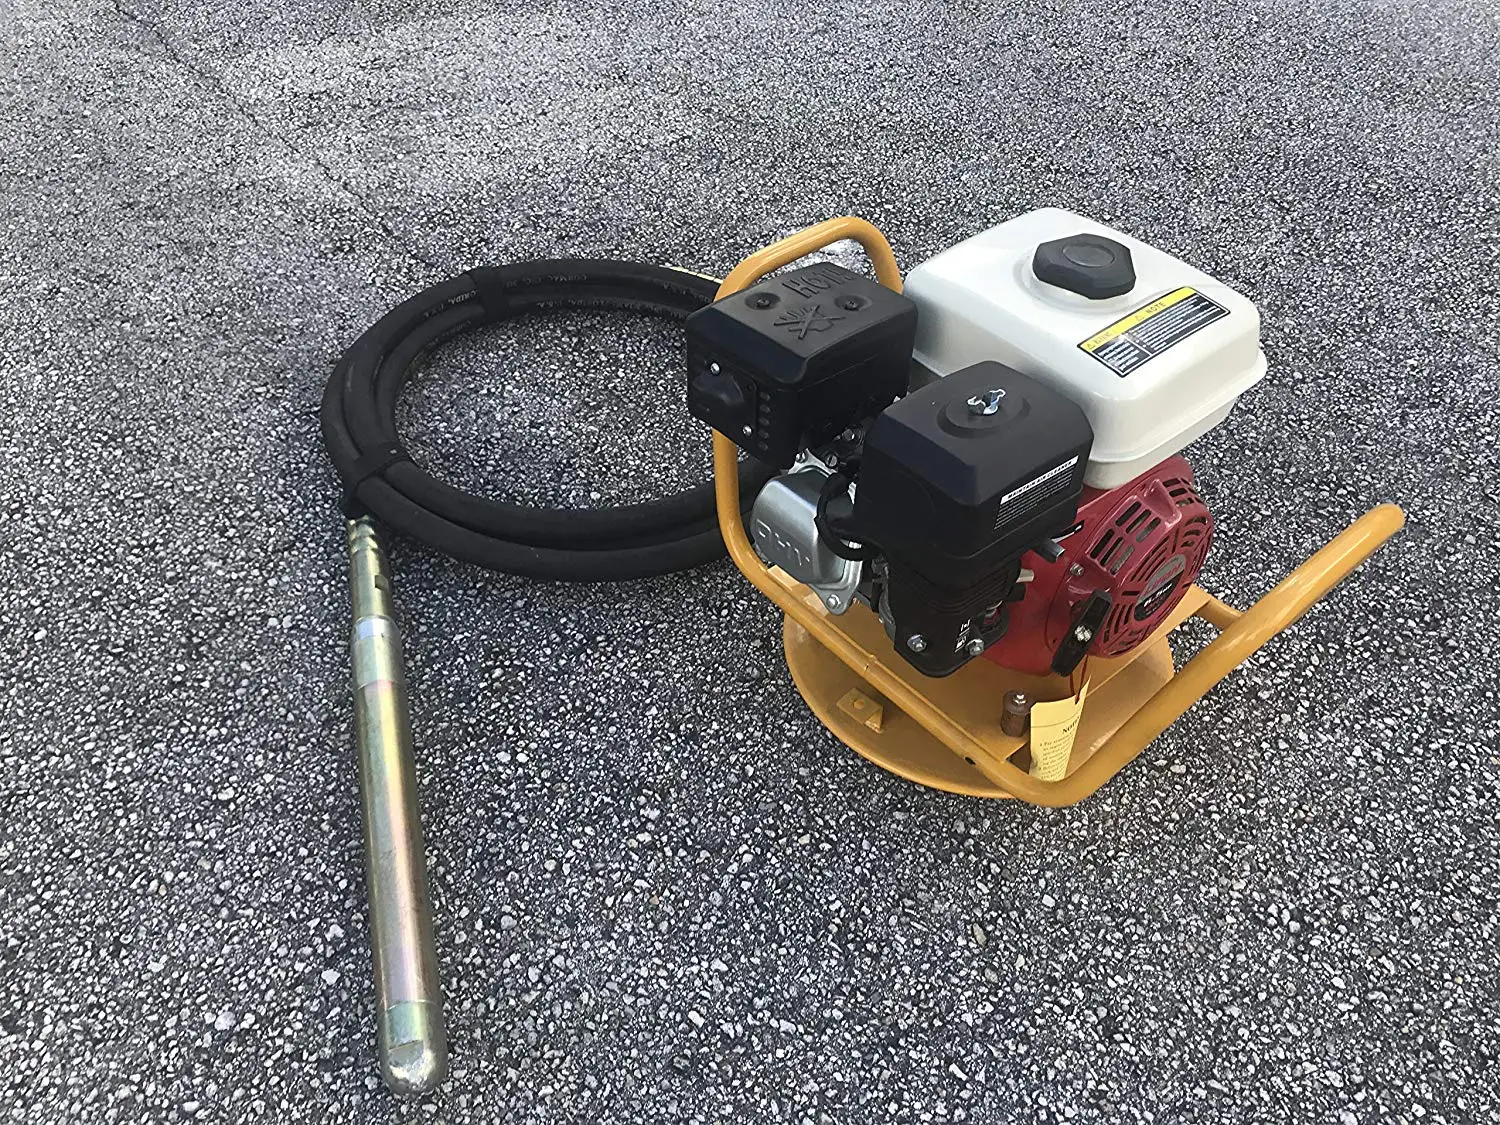 Gasoline robin engine concrete vibrator ey20